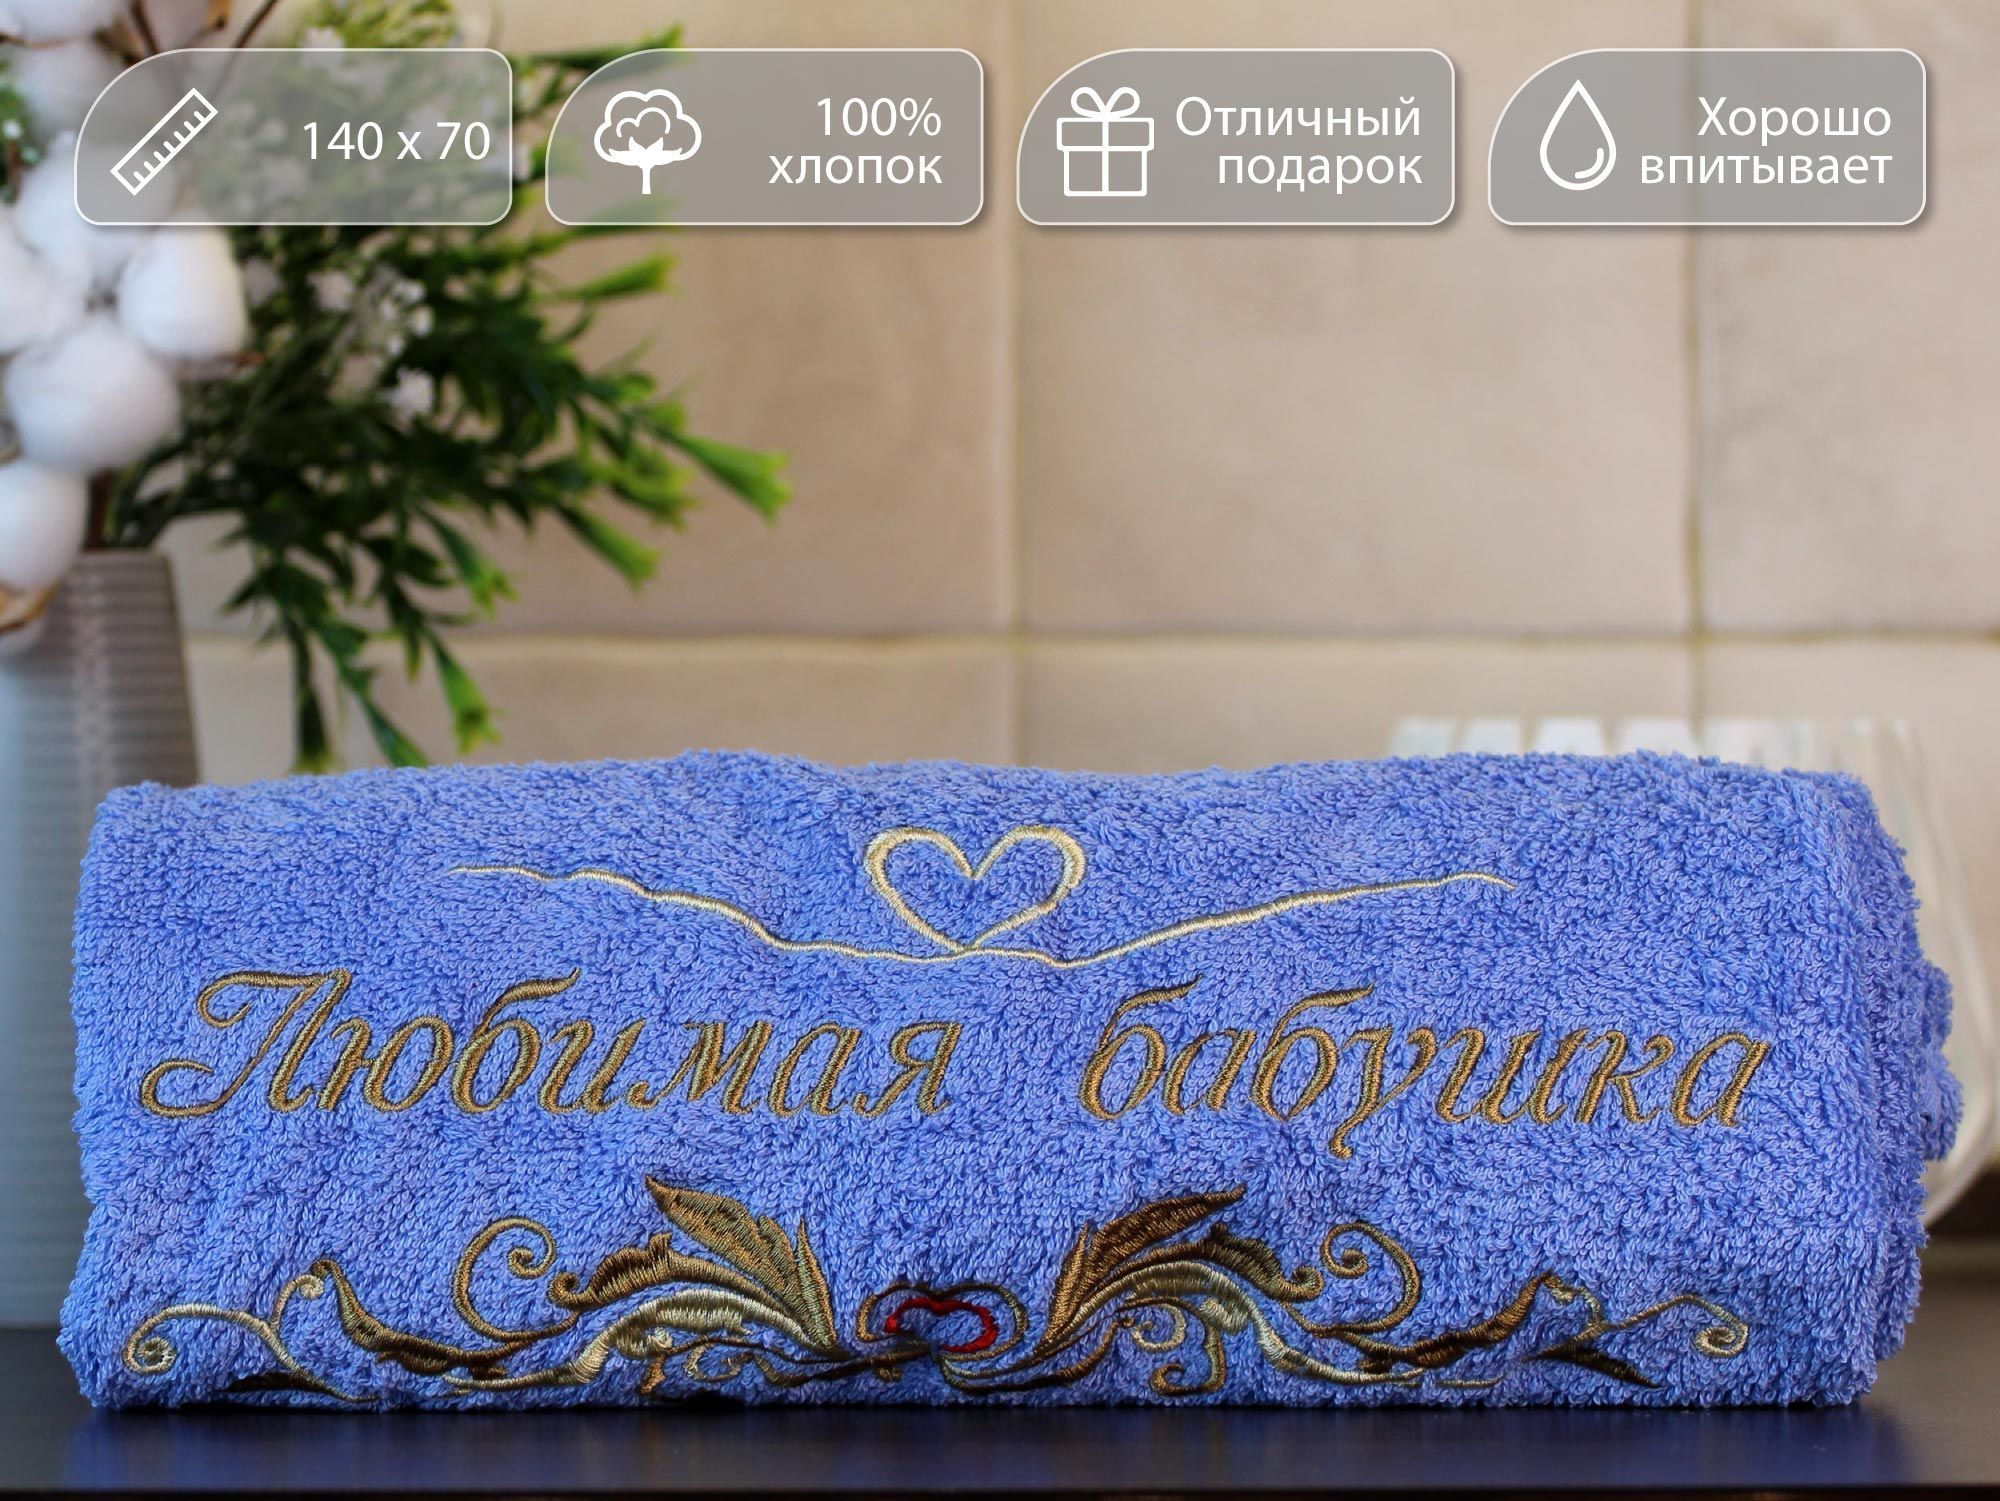 Полотенце банное, подарочное, махровое для рук, ног и лица с вышивкой-надписью 'Любимая бабушка'. 70*140см.